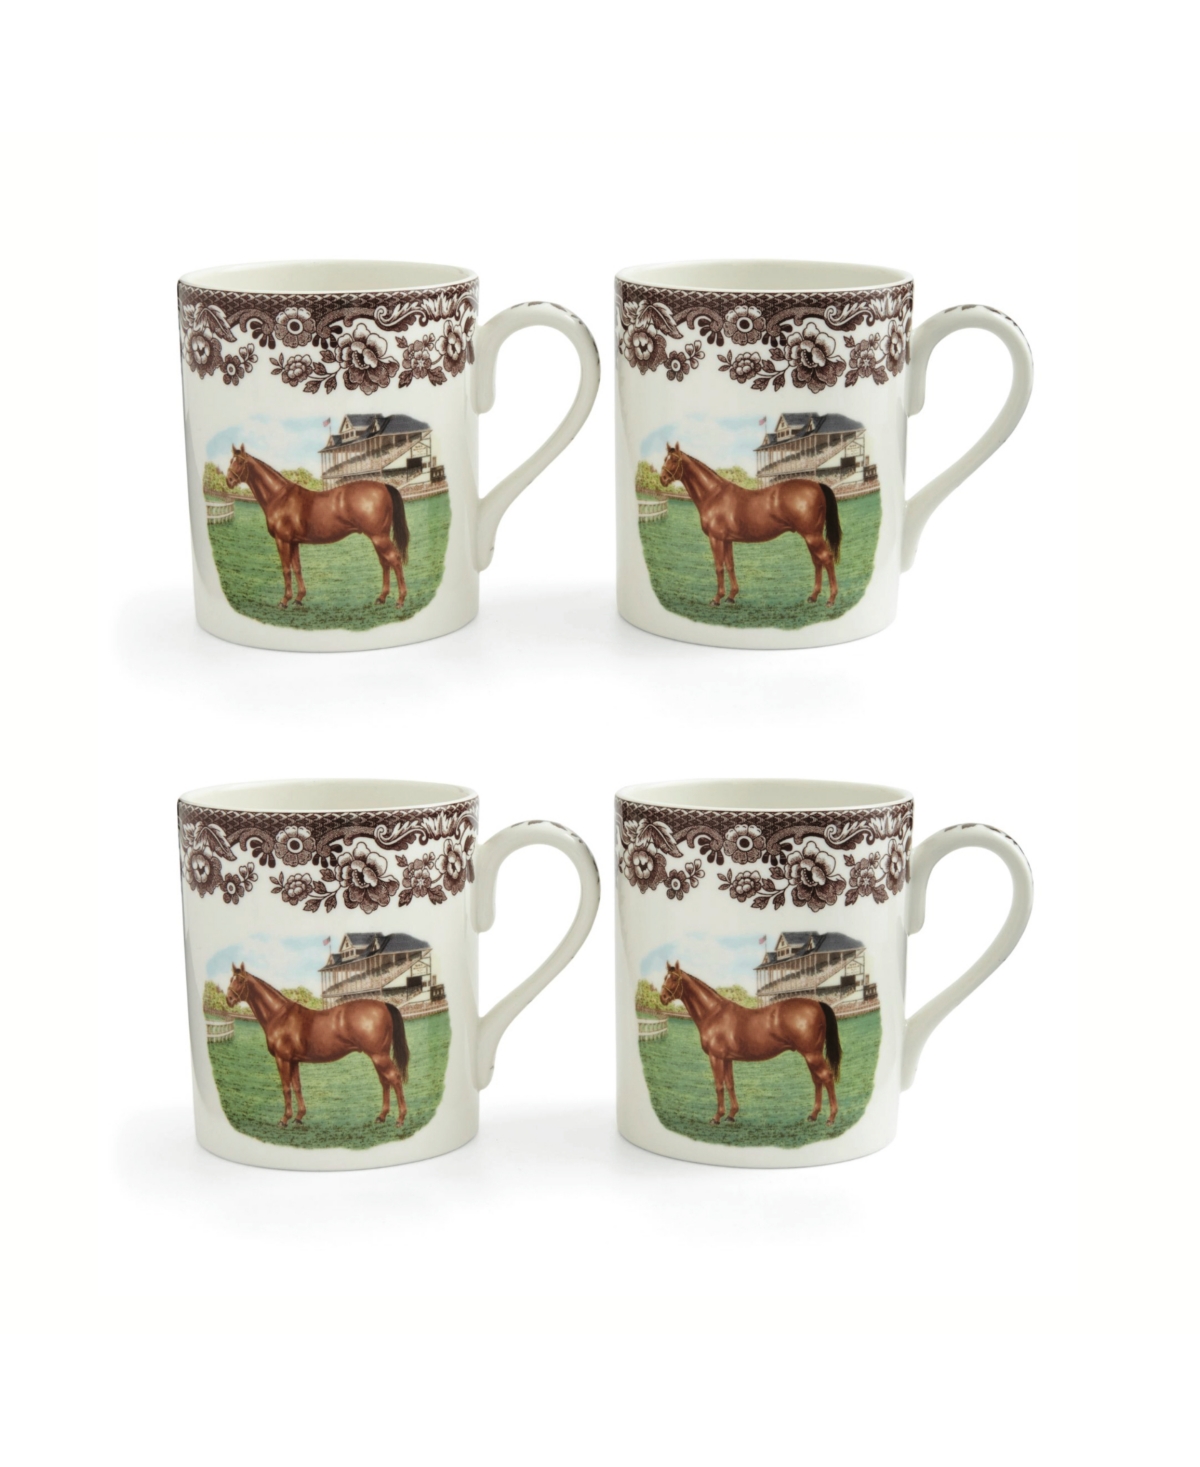 Thoroughbred Horse Mug, Set of 4 - Brown